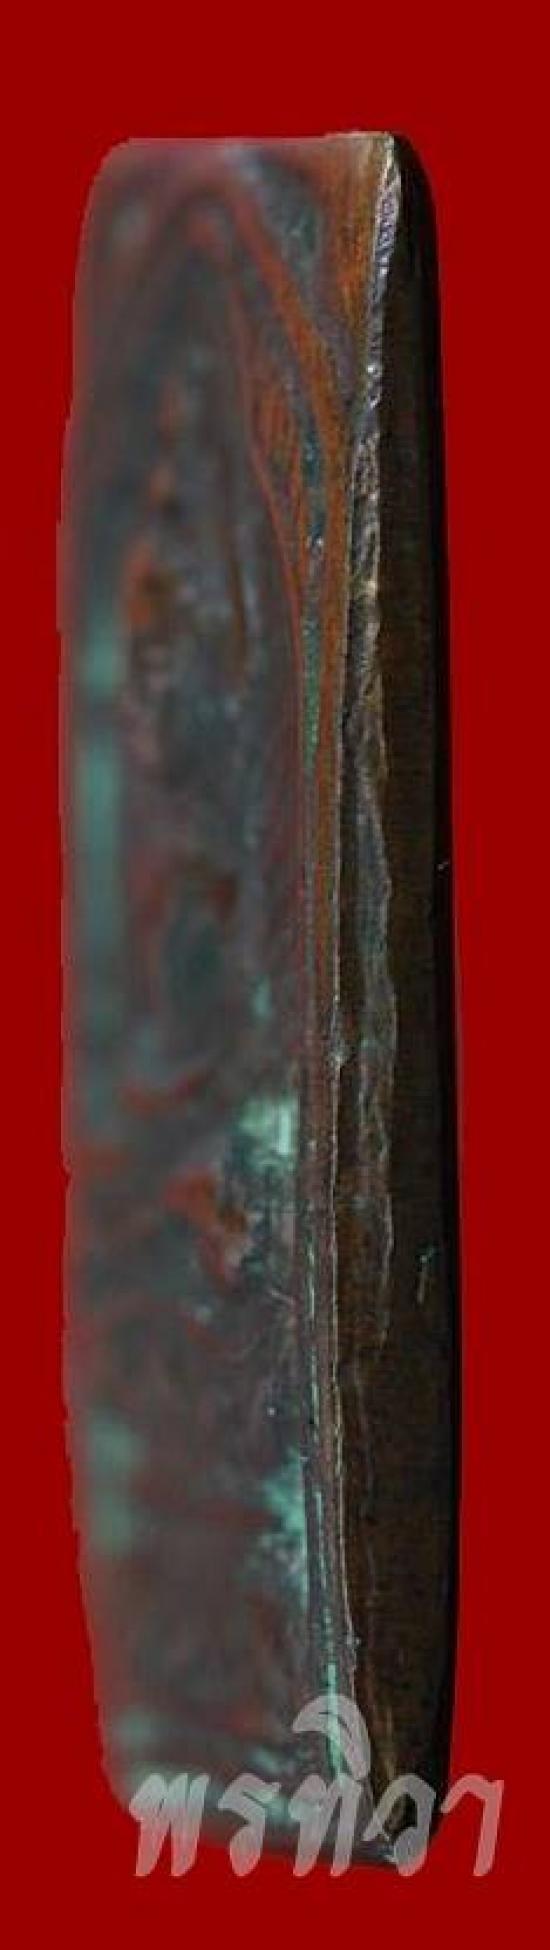 เหรียญหลวงปู่ศุข พิมพ์ประภามณฑลข้างรัศมี เนื้อทองแดง วัดปากคลองมะขามเฒ่าชัยนาท ปี 2466